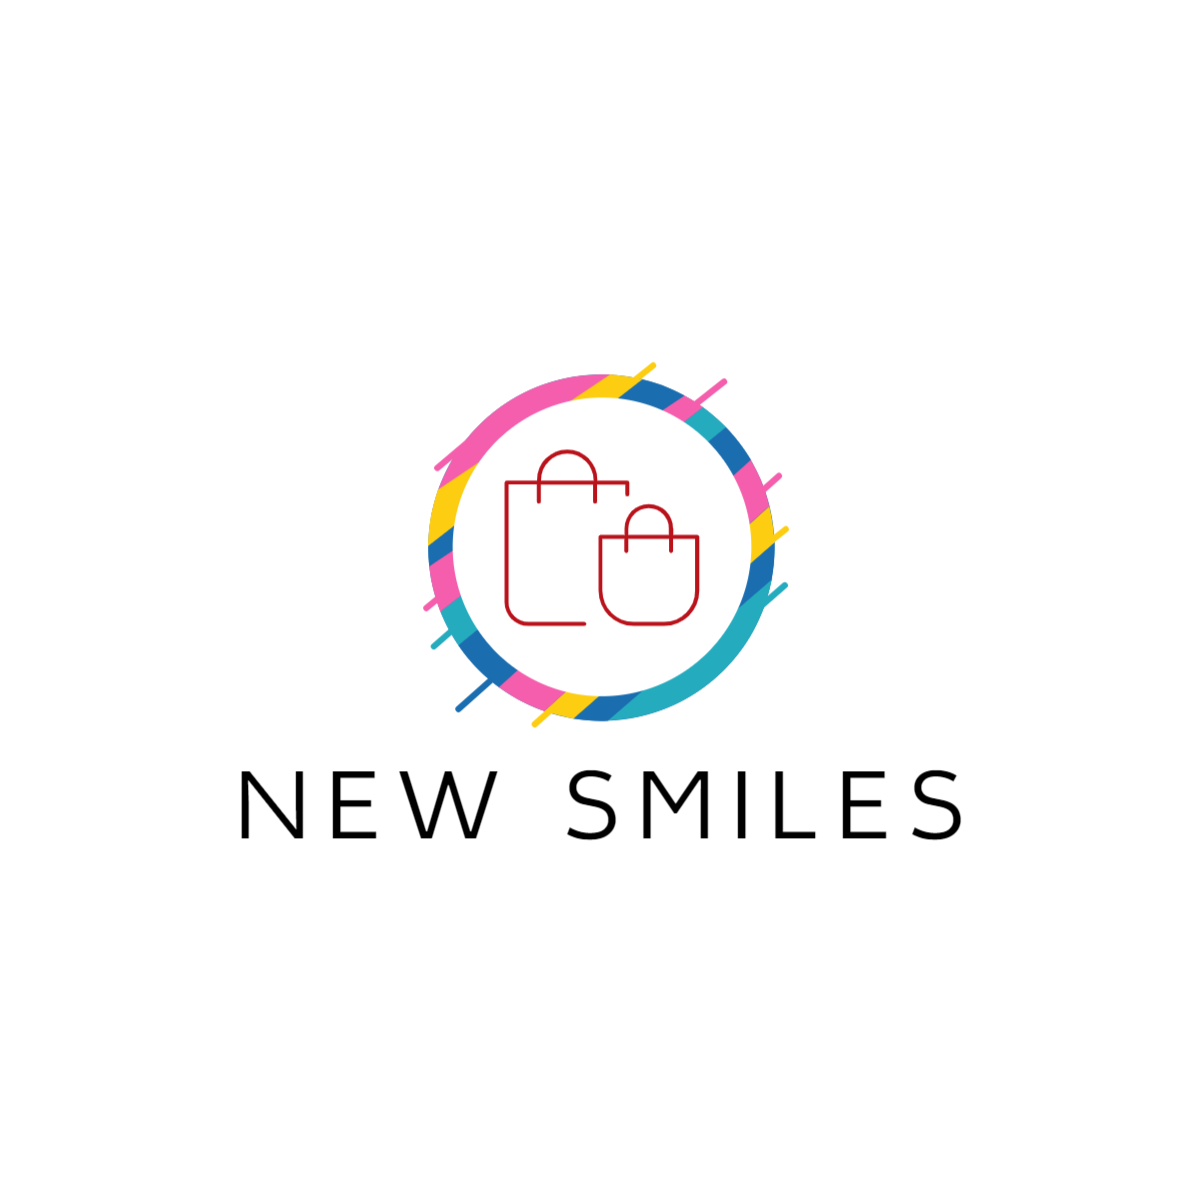 NEW SMILES